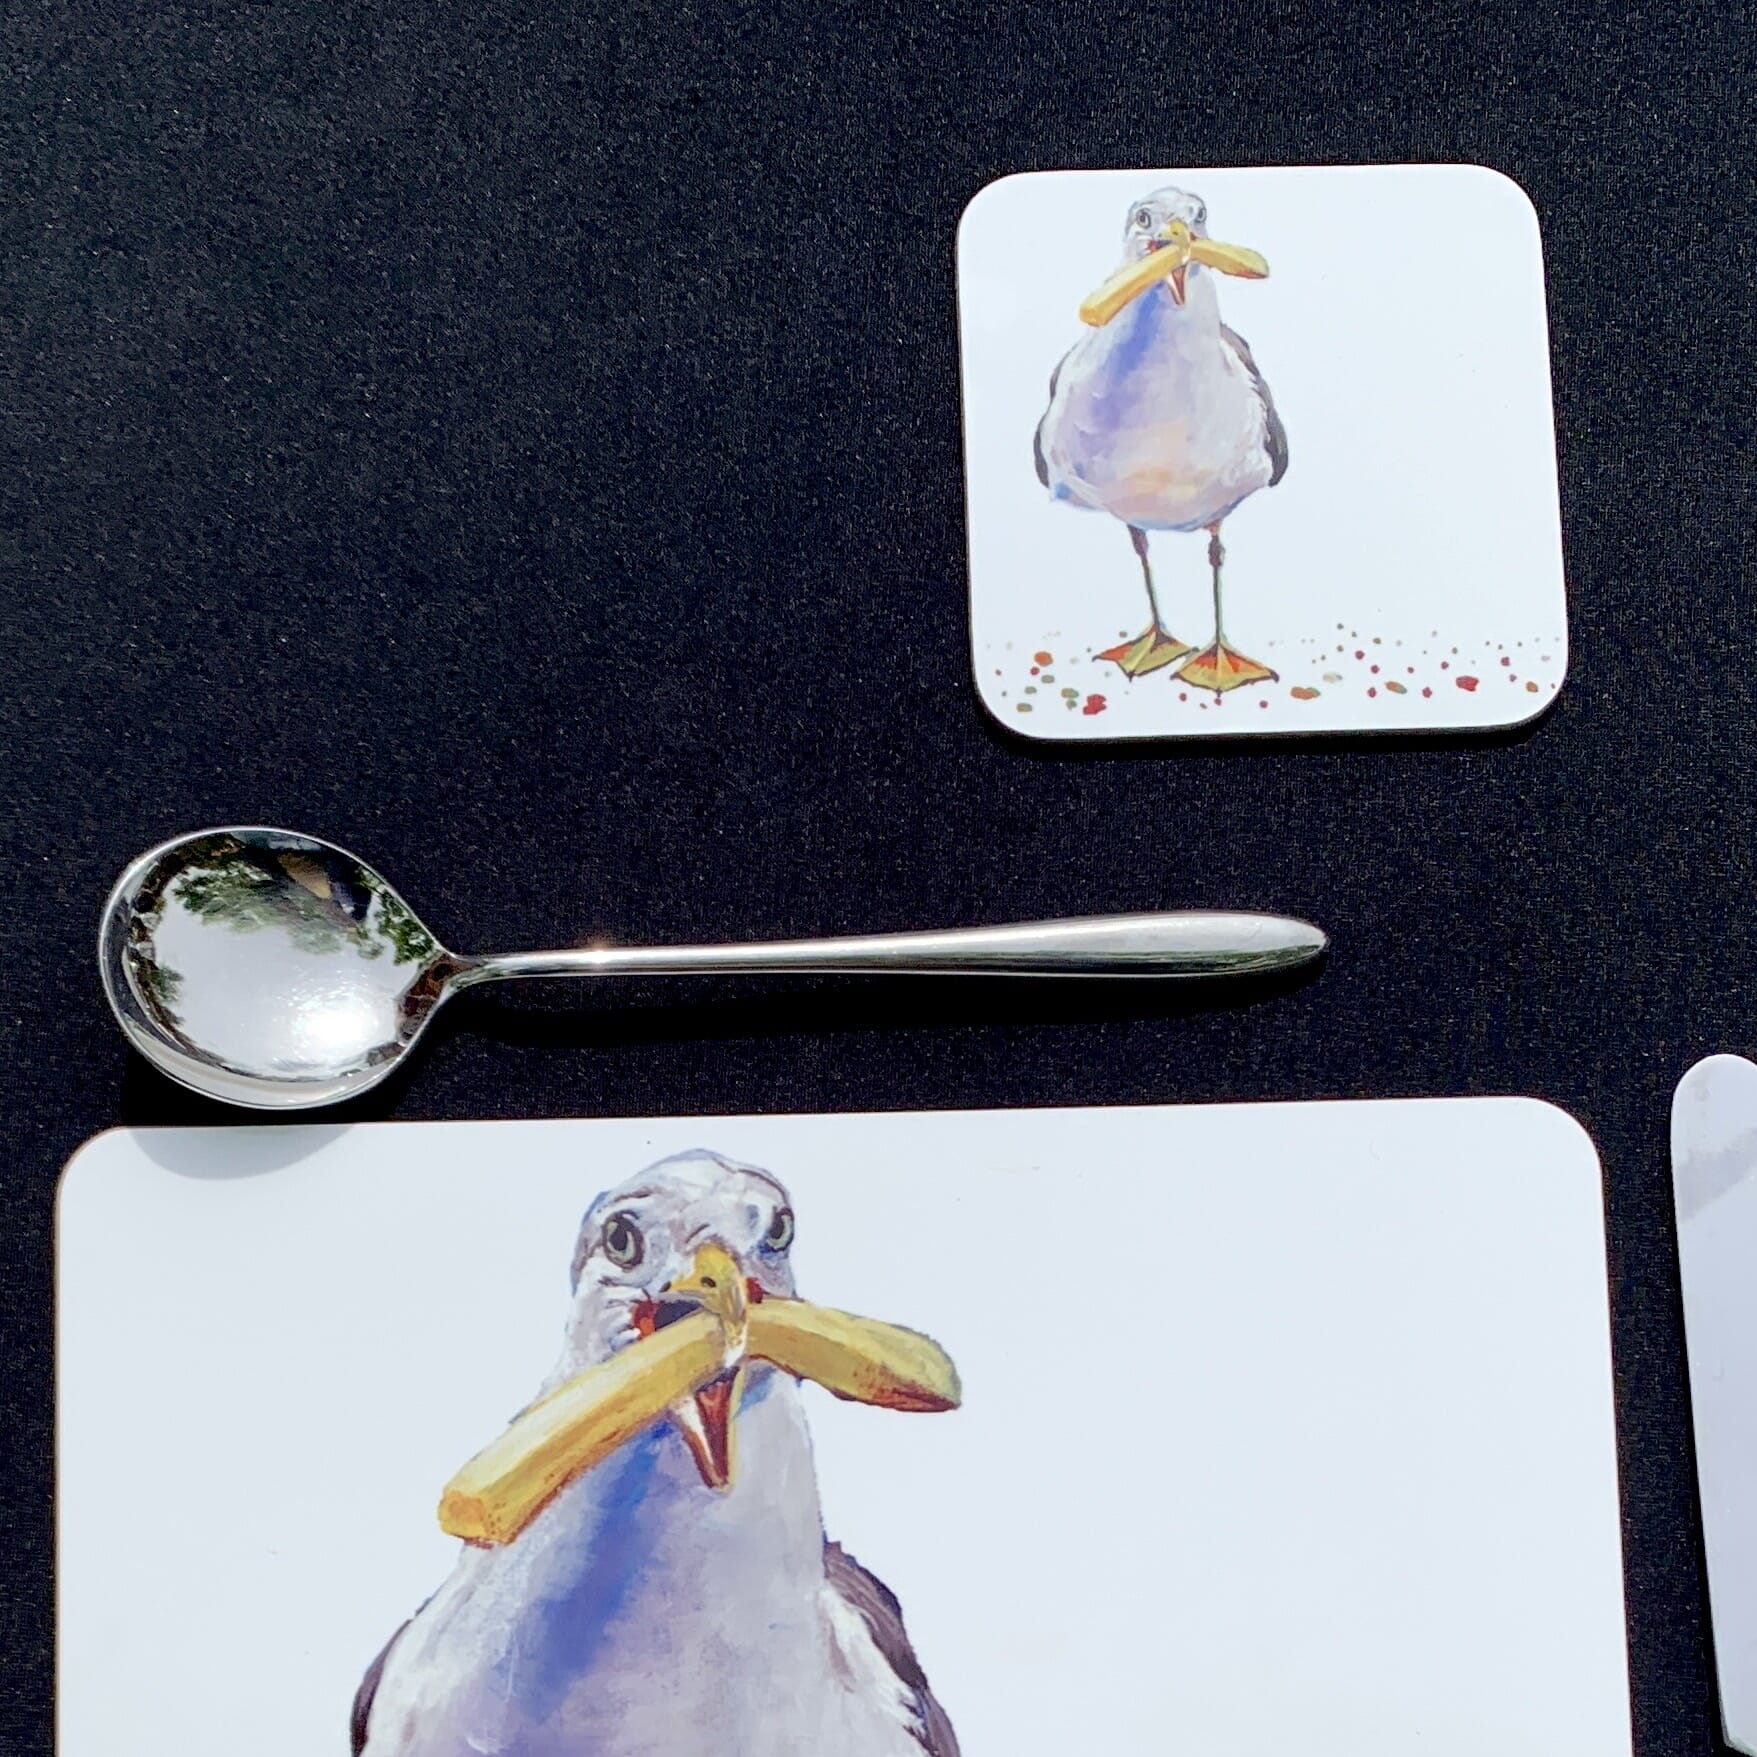 Handmade Seagull Art 9x9cm Coaster - Hard Backed, Glossy Finish 